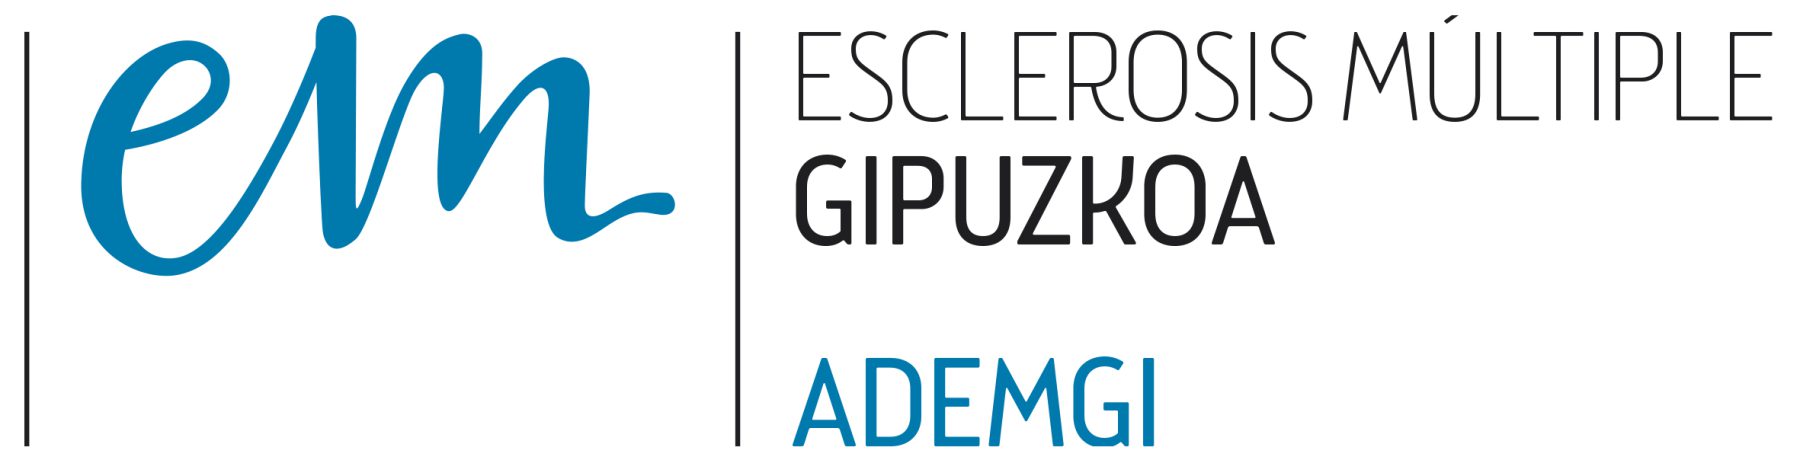 Ademgi - Asociación de Esclerosis Múltiple de Gipuzkoa